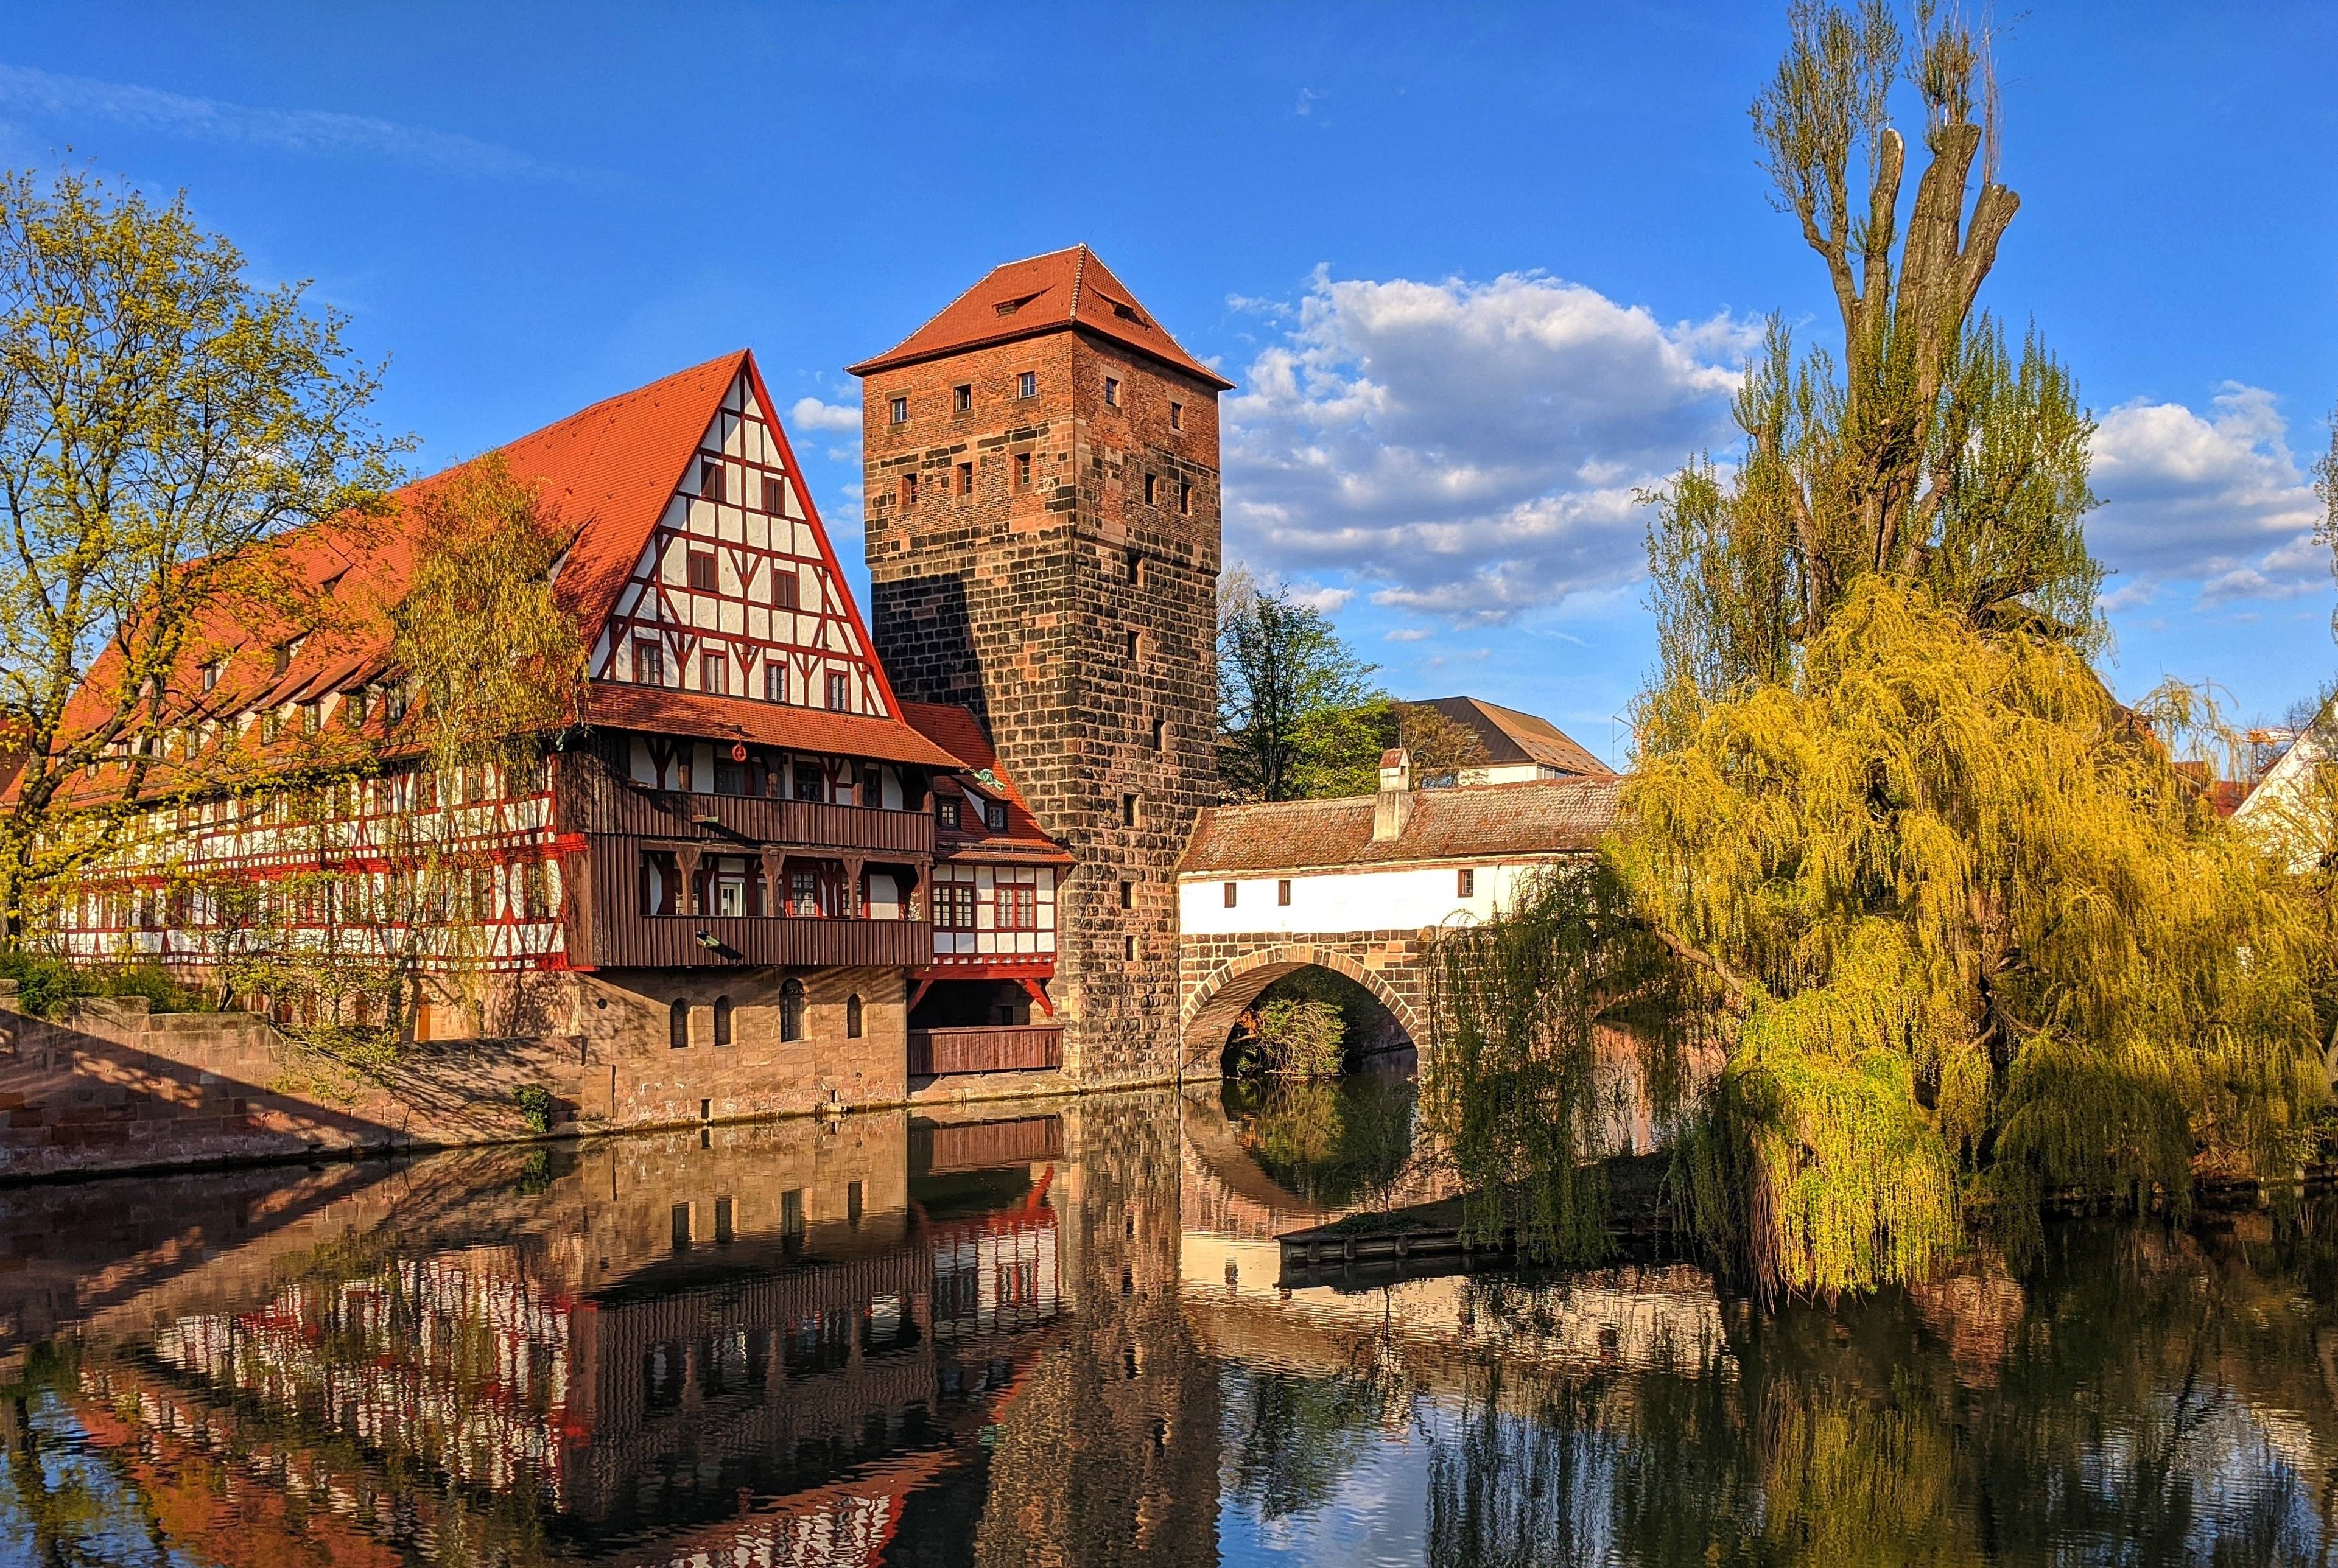 Une excursion d'une journée à la découverte de la magnifique vieille ville médiévale de Nuremberg